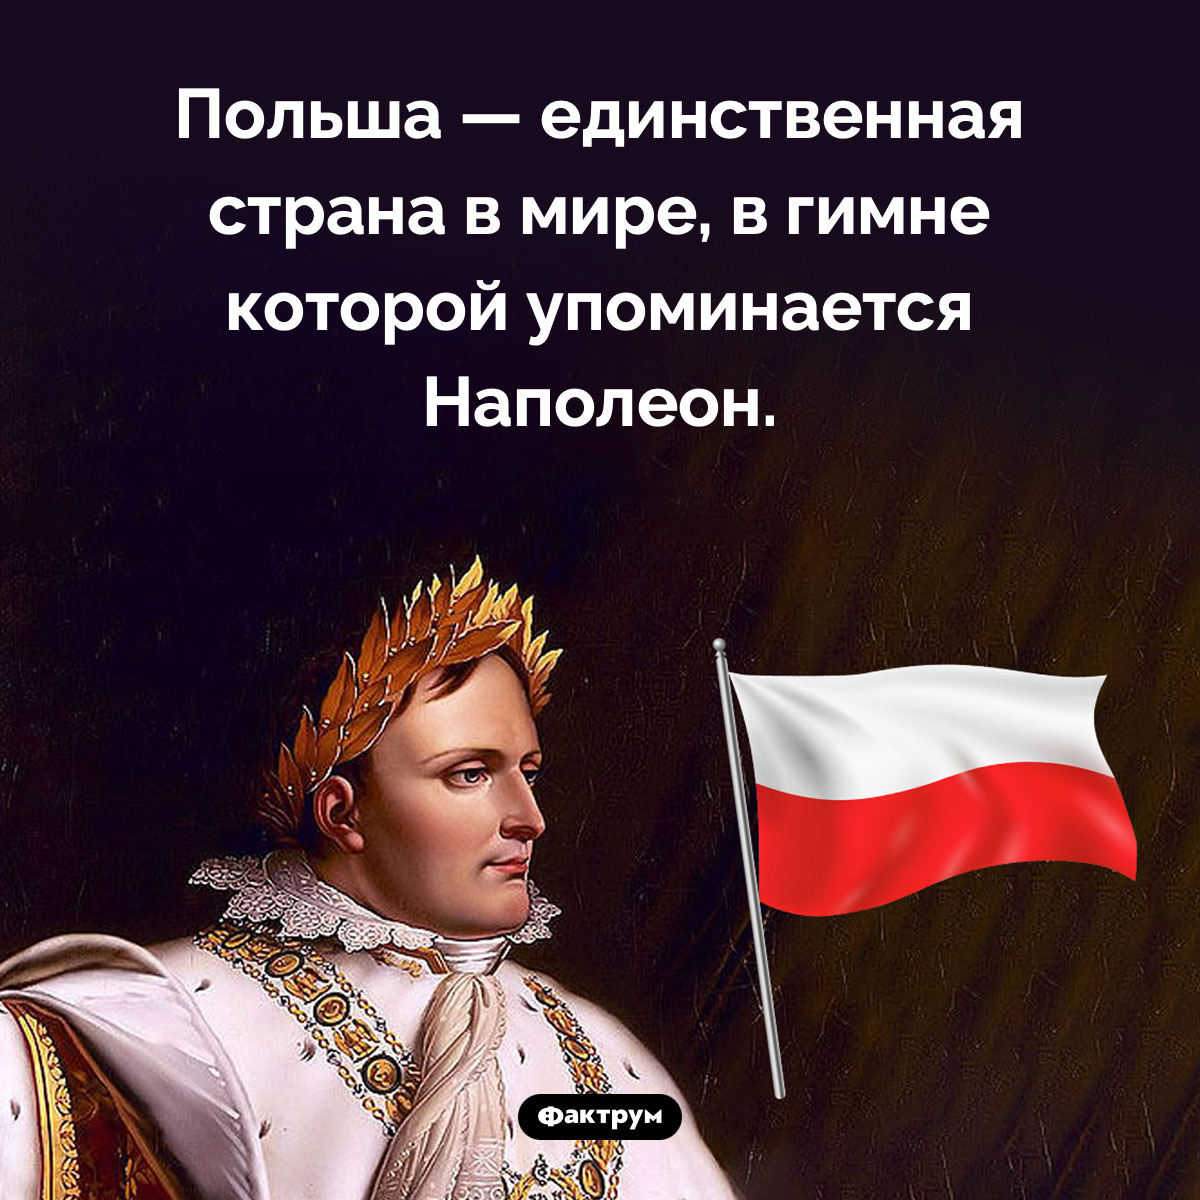 Наполеон в гимне Польши. Польша — единственная страна в мире, в гимне которой упоминается Наполеон.